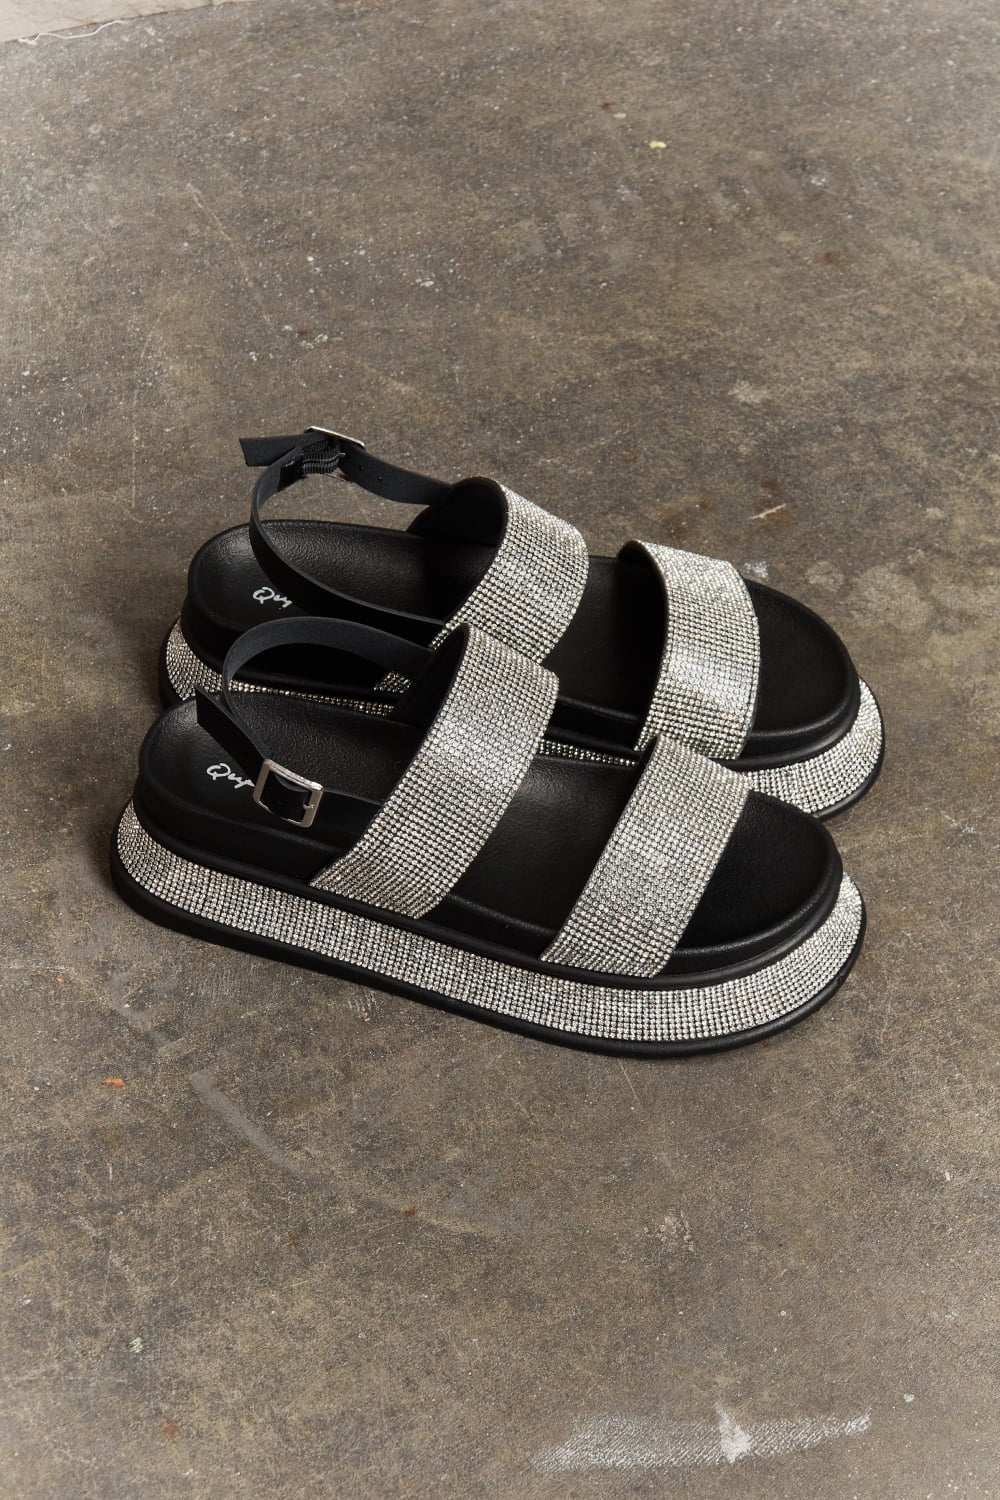 Rhinestone Platform Slingback Sandal Shoes RYSE Clothing Co.   